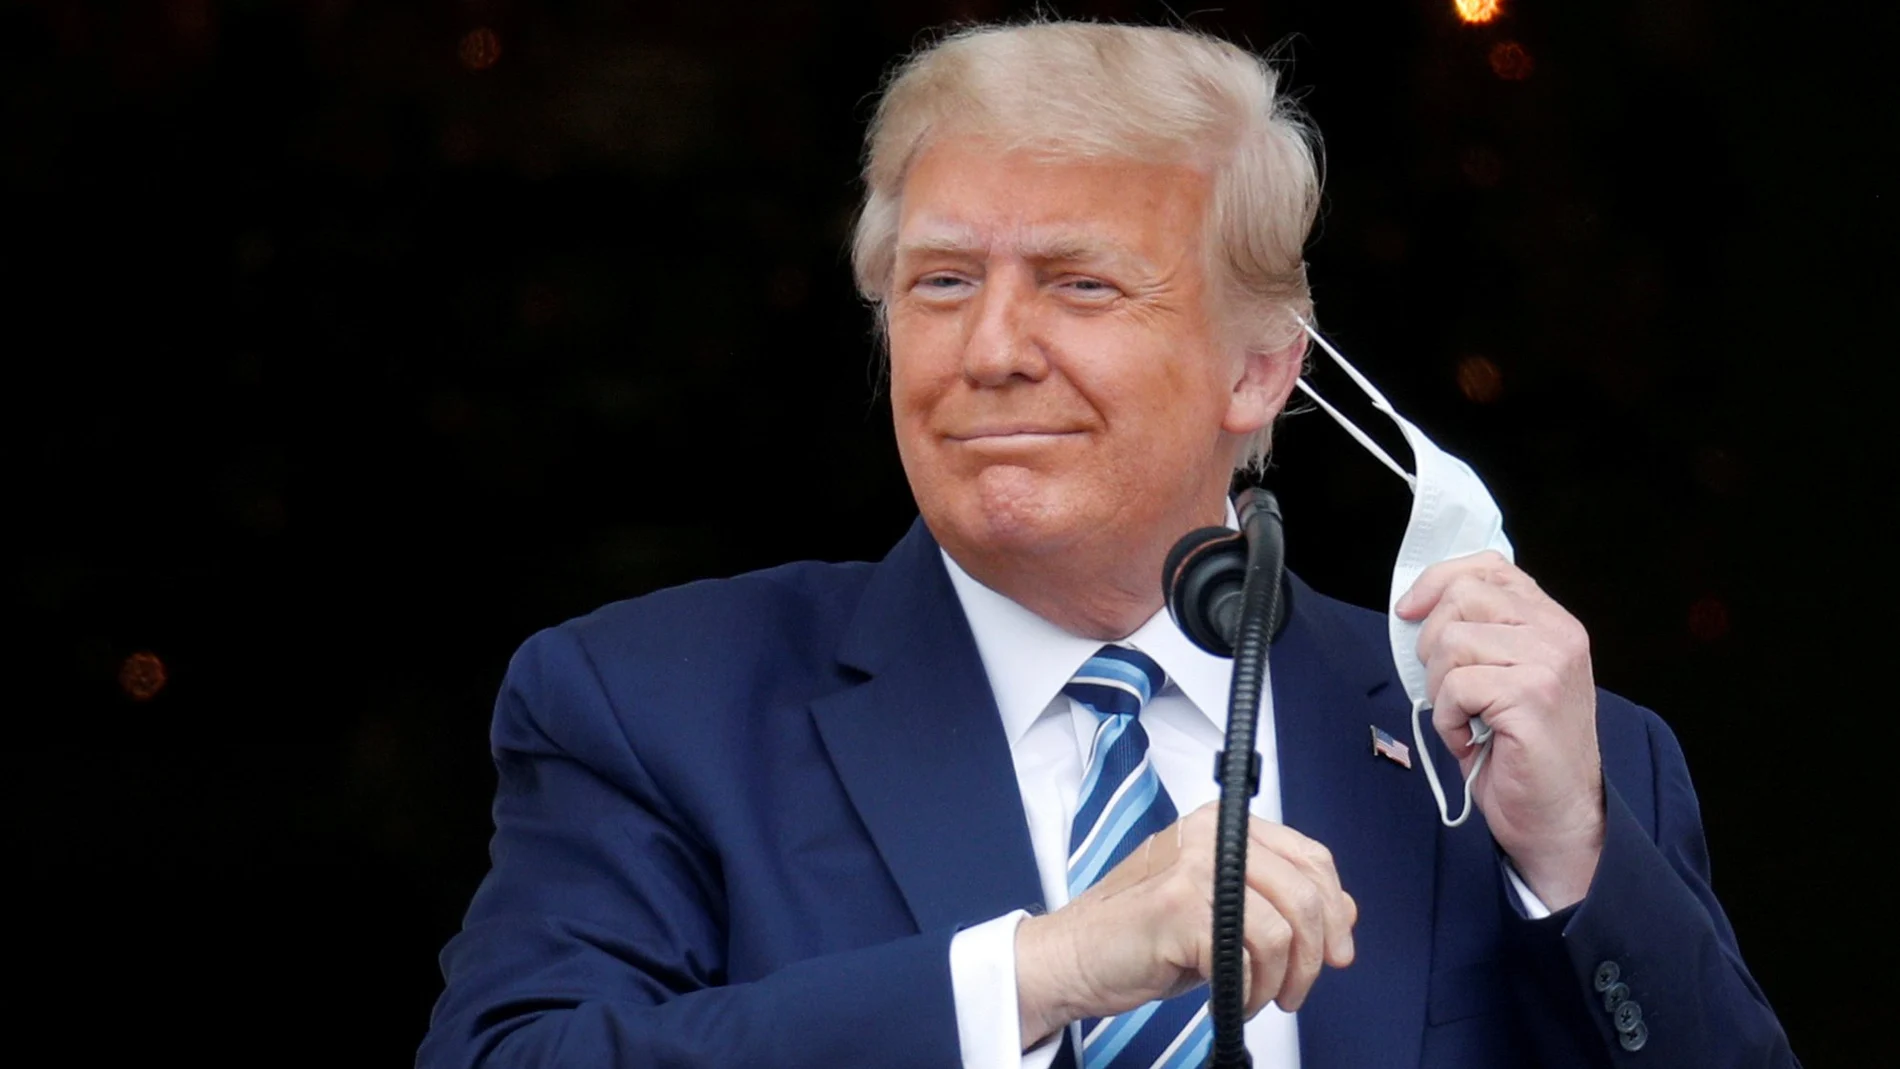 El presidente Donald Trump se quita la mascarilla al salir el sábado al balcón de la Casa Blanca